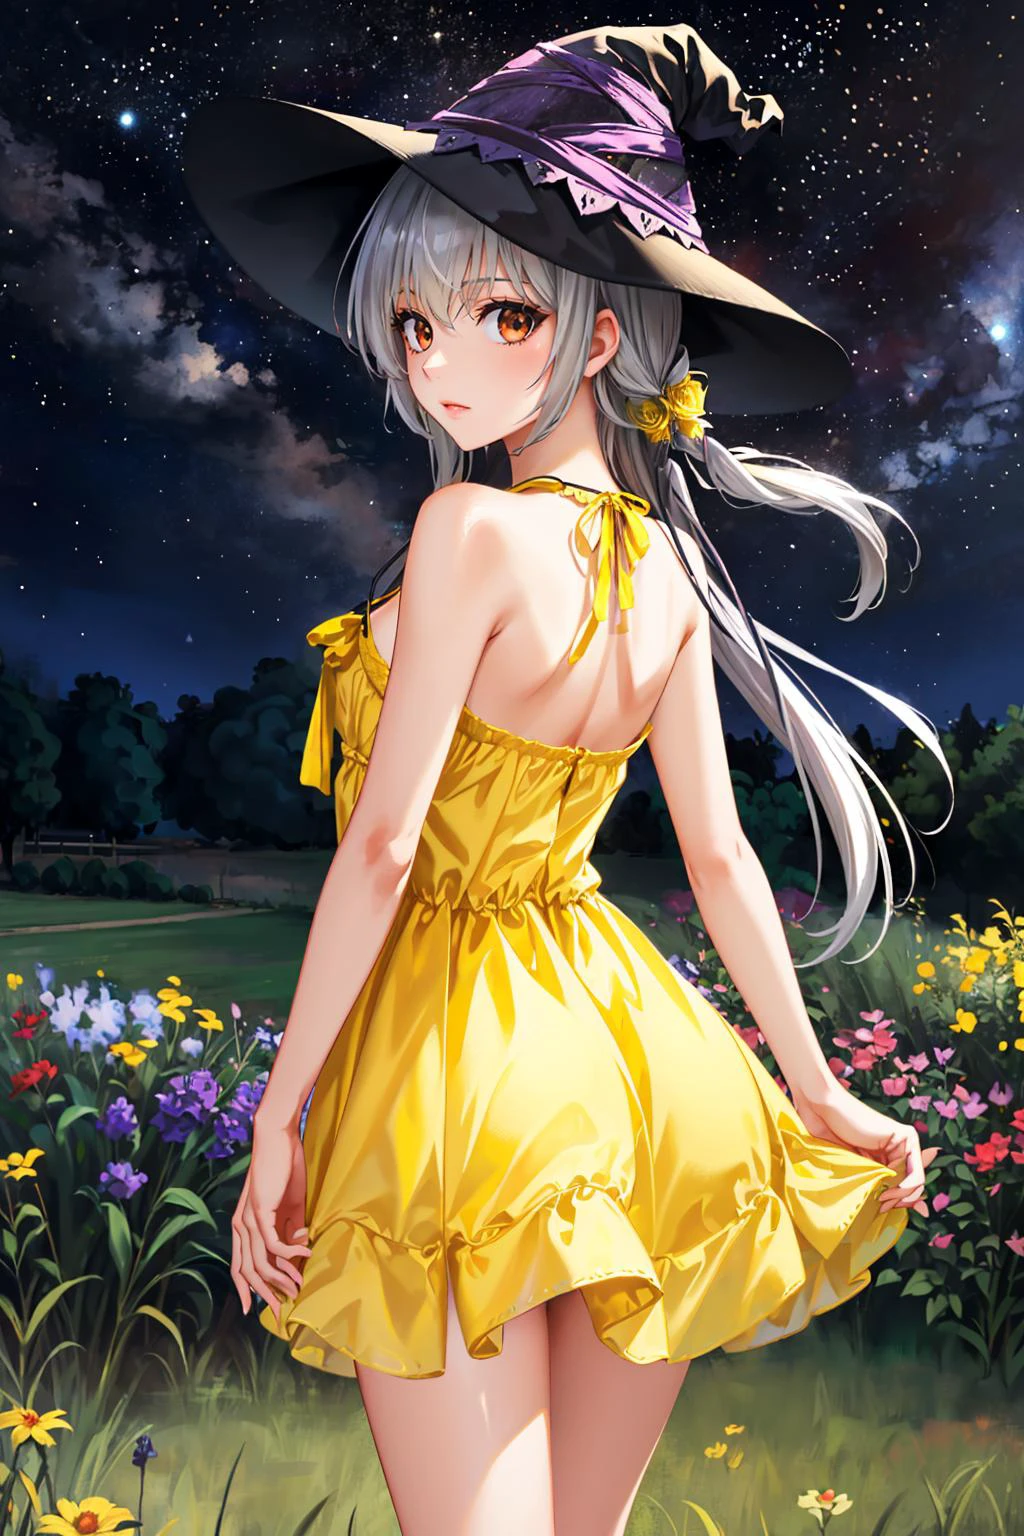 Obra de arte, melhor qualidade, Kamishiro Alice, chapéu de bruxa, por trás, (vestido de verão amarelo:1.3), jardim, céu noturno edgYSD,woman wearing a vestido de verão amarelo